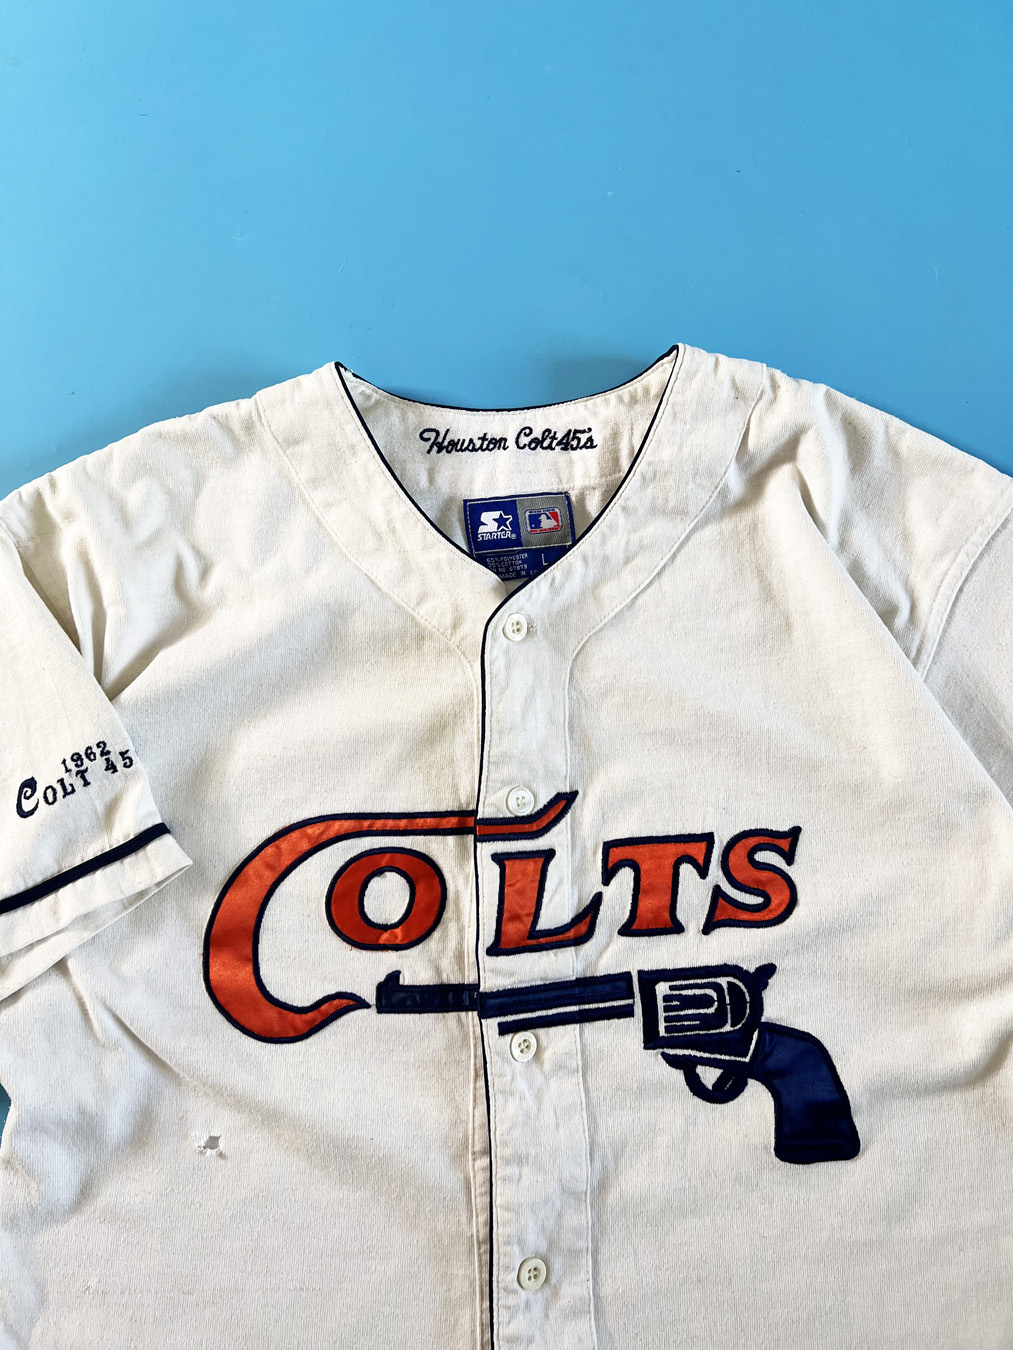 1962-64 Houston Colt .45's Game Worn Jersey. Fantastic vintage